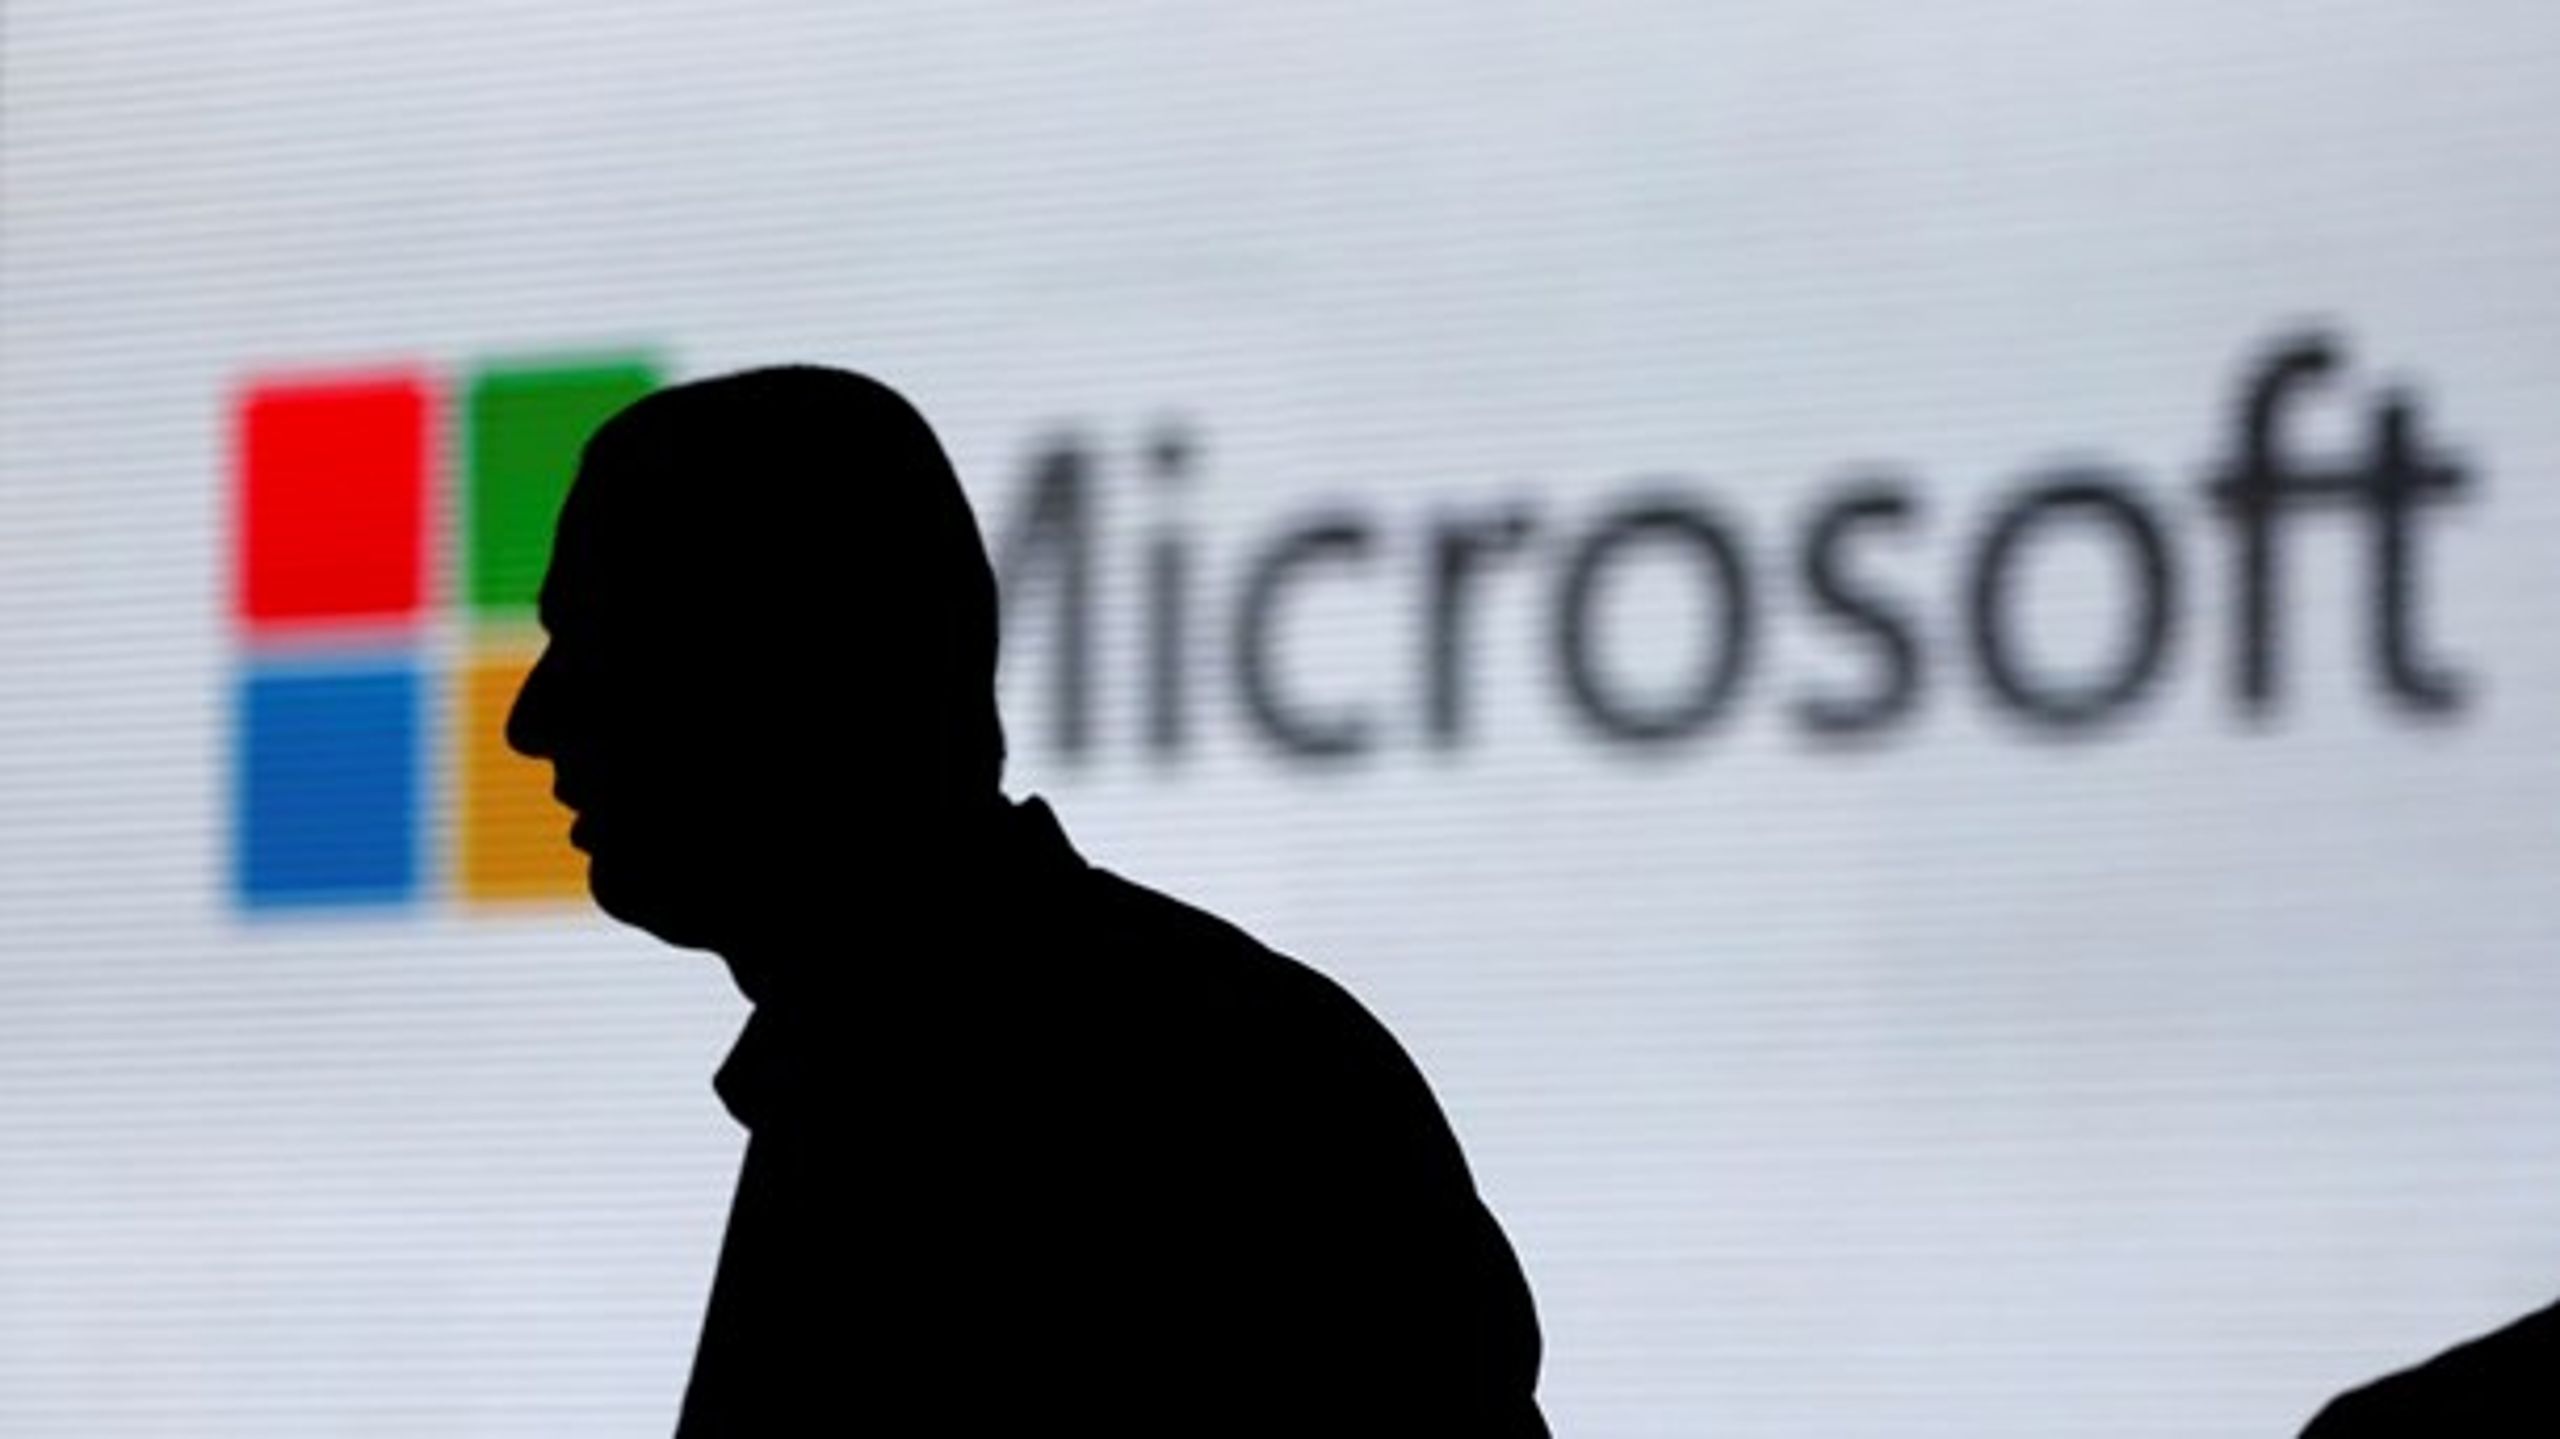 Microsoft Danmark er ikke enige i Skatteministeriets påstand om, at selskabet ikke skulle have overholdt bestemmelser vedrørende transfer pricing. Derfor vil selskabet frifindes og undgå forhøjet skatteopkrævning.&nbsp;